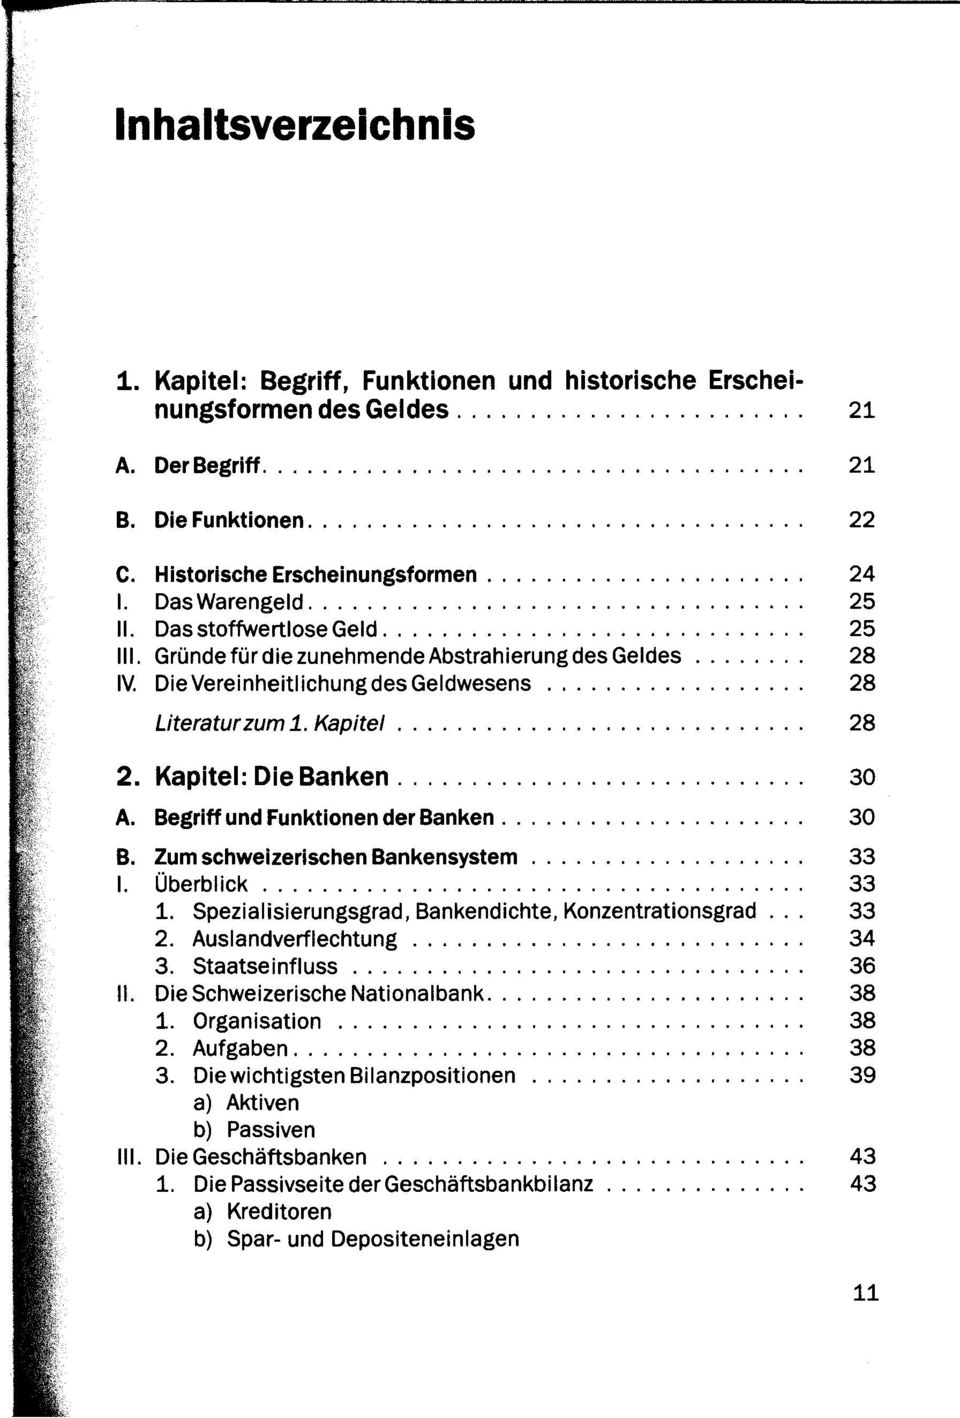 Begriff und Funktionen der Banken 30 B. Zum schweizerischen Bankensystem 33 I. Überblick 33 1. Spezialisierungsgrad, Bankendichte, Konzentrationsgrad... 33 2. Auslandverflechtung 34 3.